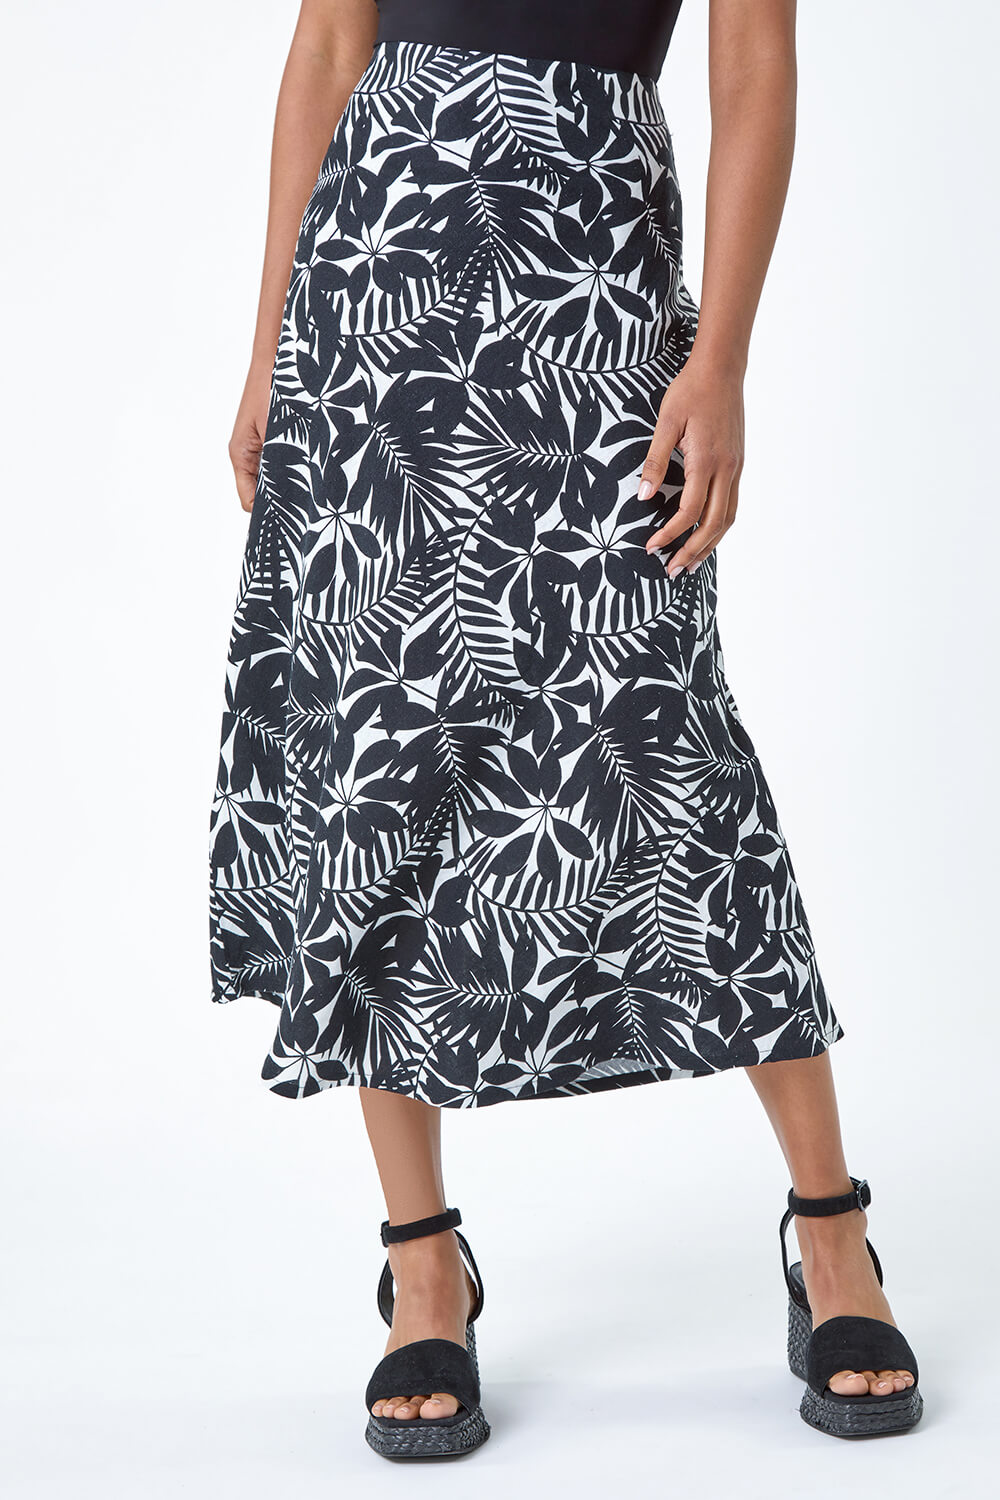 Black Leaf Print Linen Blend A-Line Skirt, Image 4 of 5